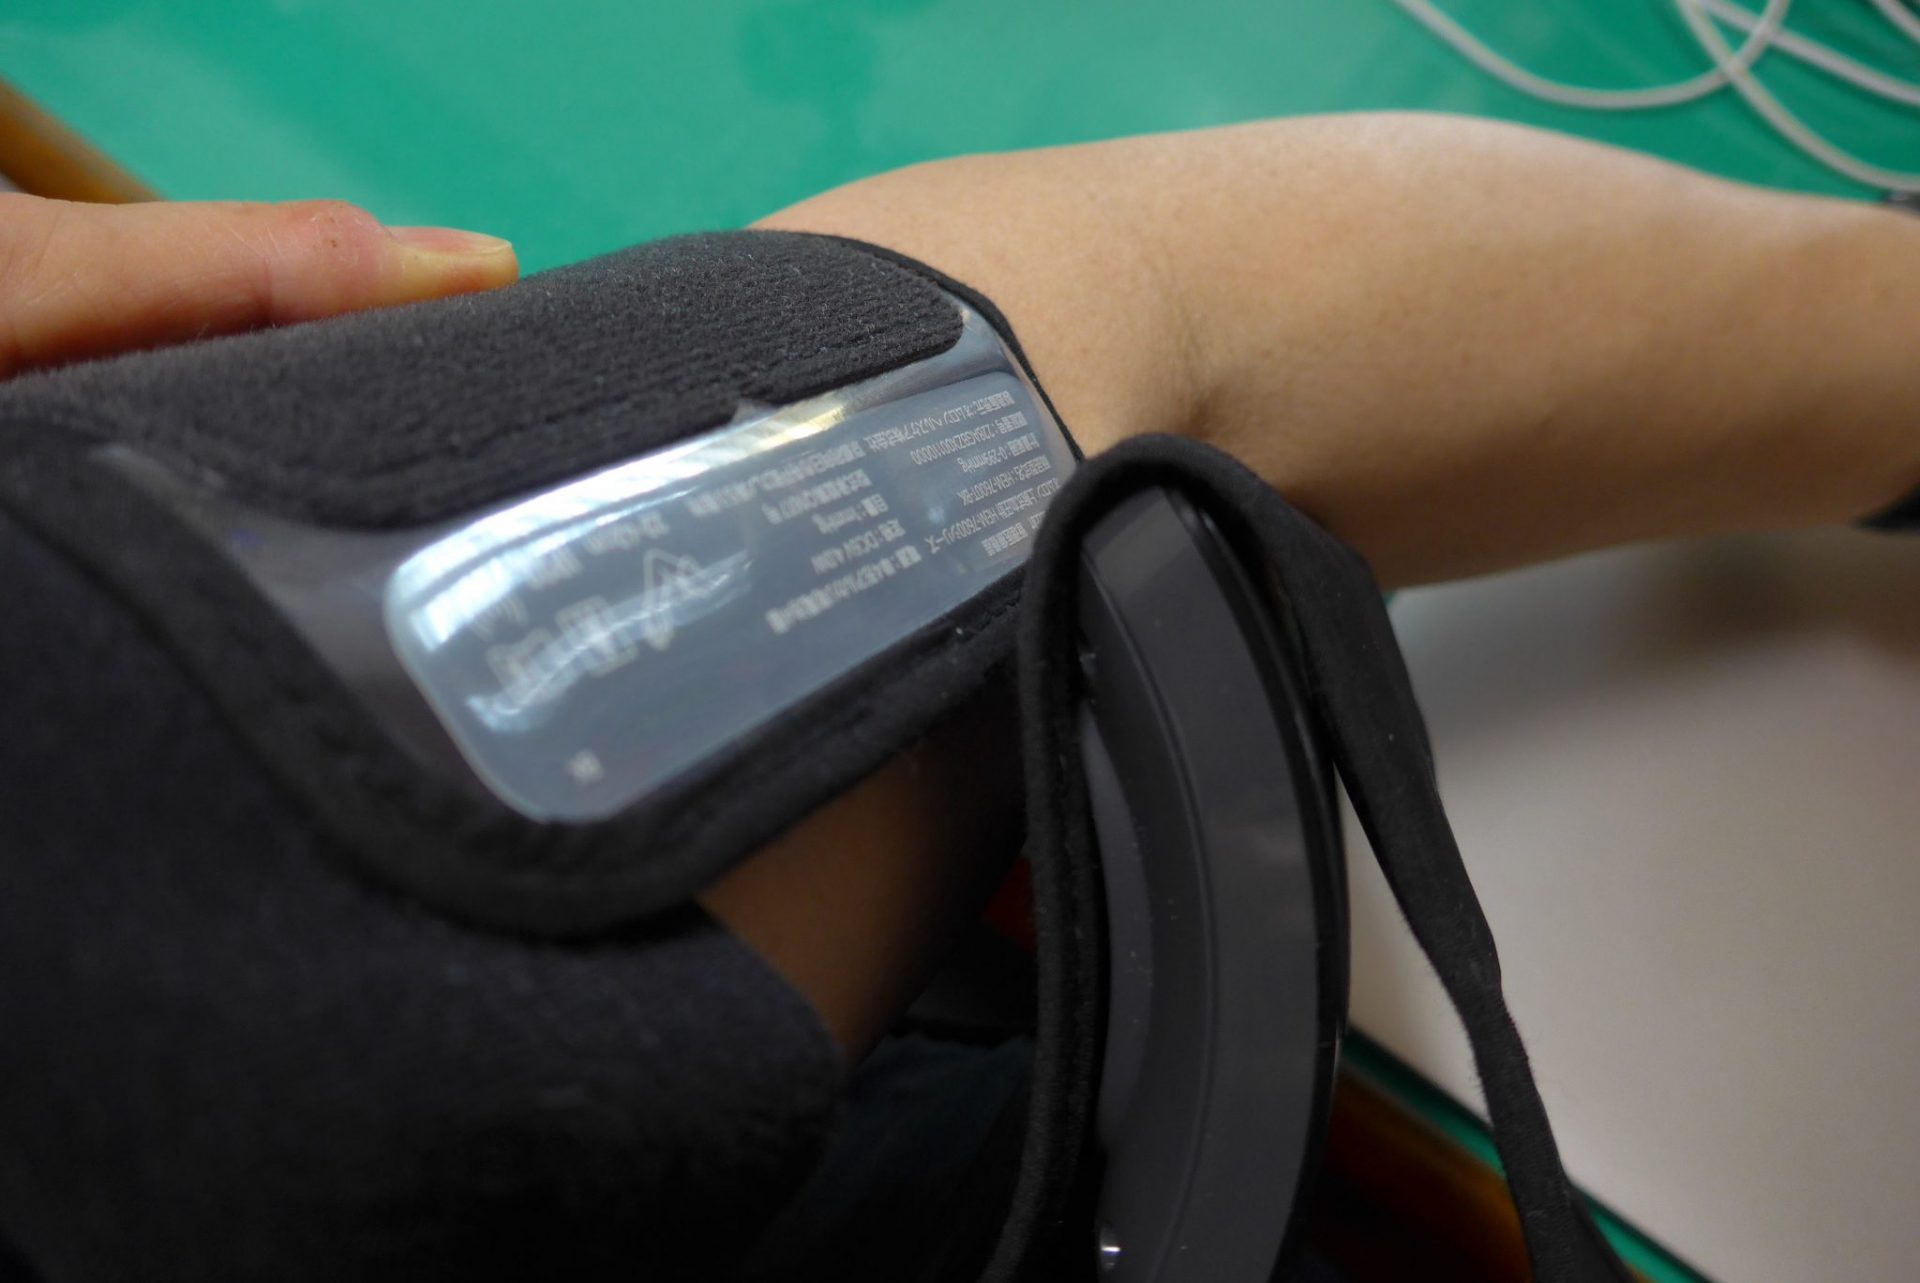 使いやすい『オムロンHEM-7600T』血圧計のレビュー！